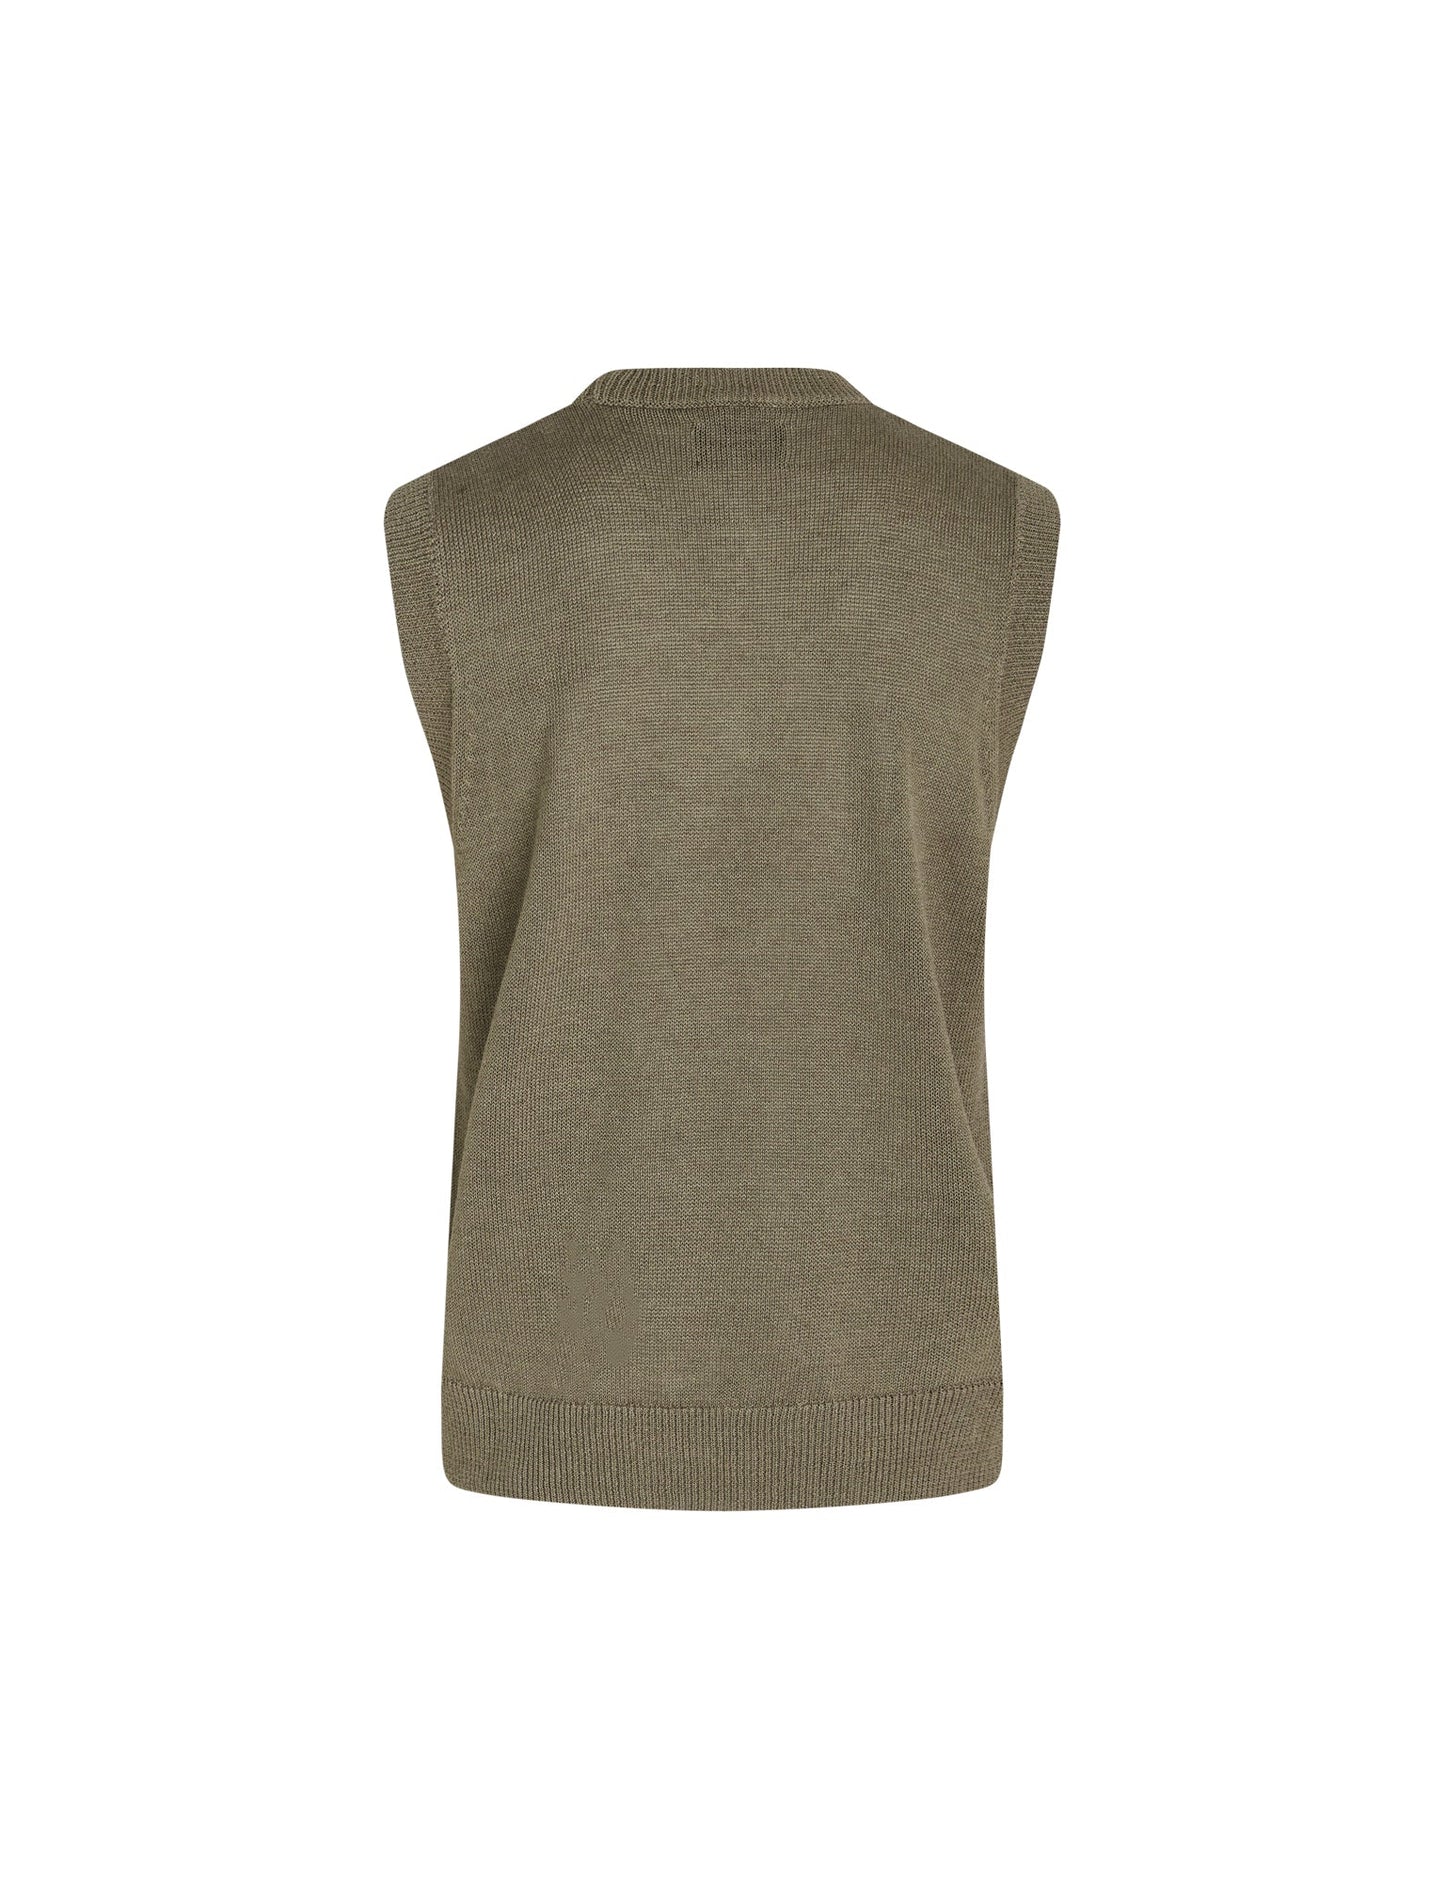 Linen Cotton Koro Vest, Dusky Green